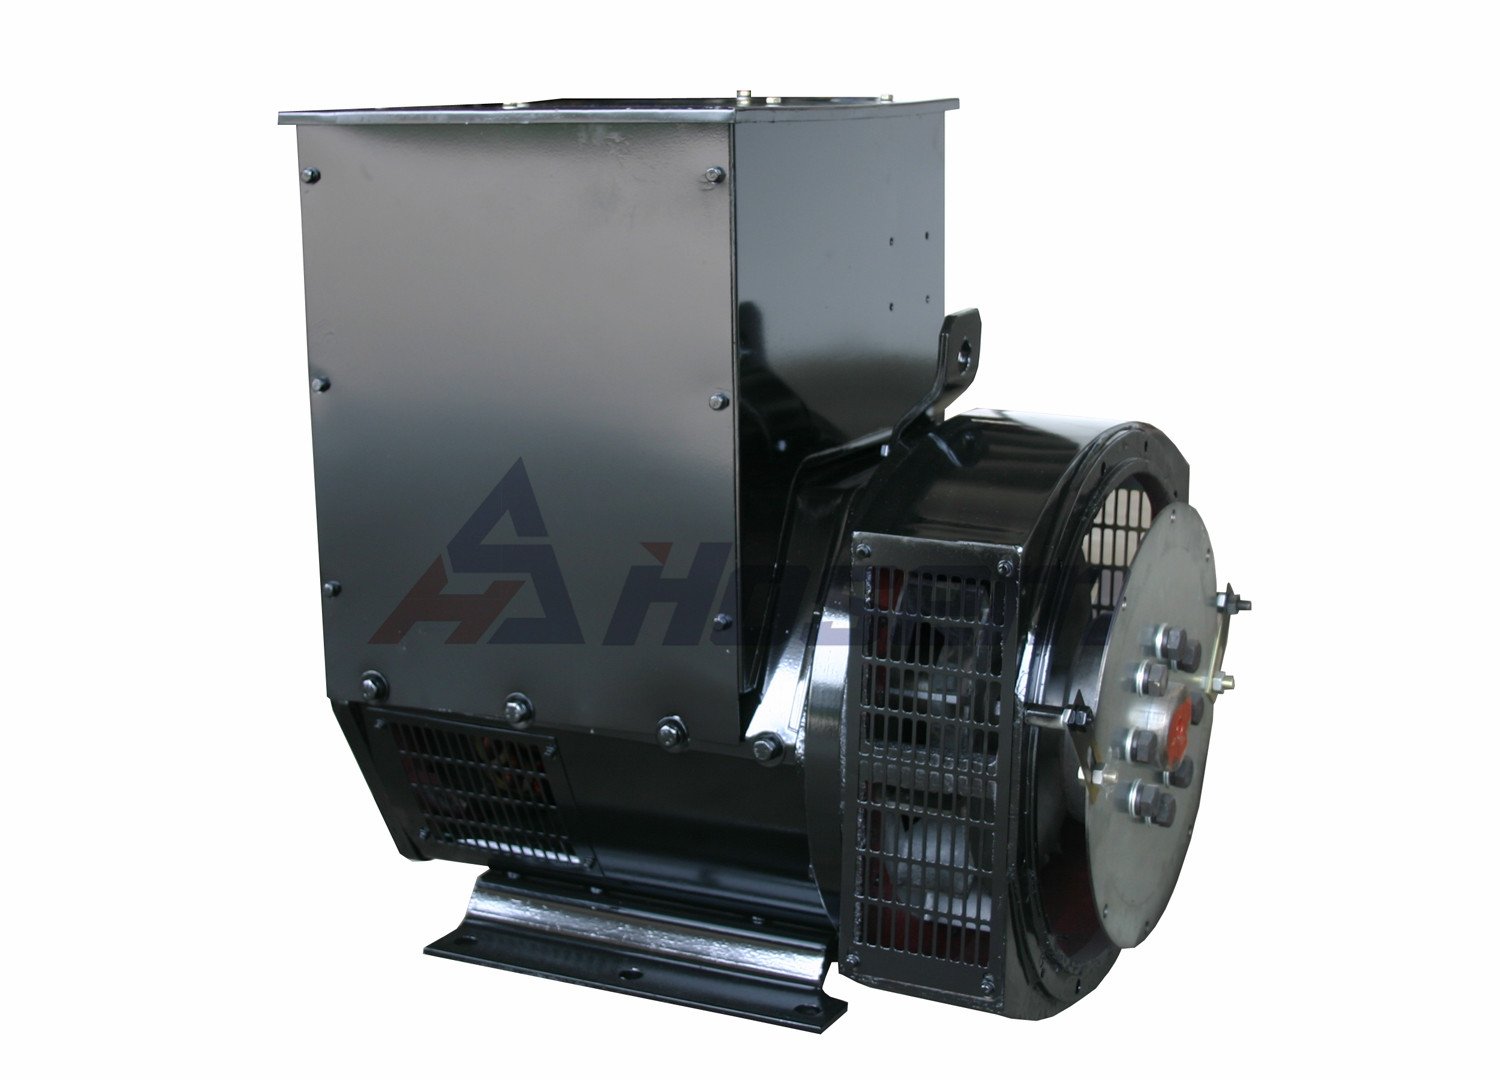 Bezszczotkowy alternator 60 Hz 10kva - 1650KVA dla zestawu generatora